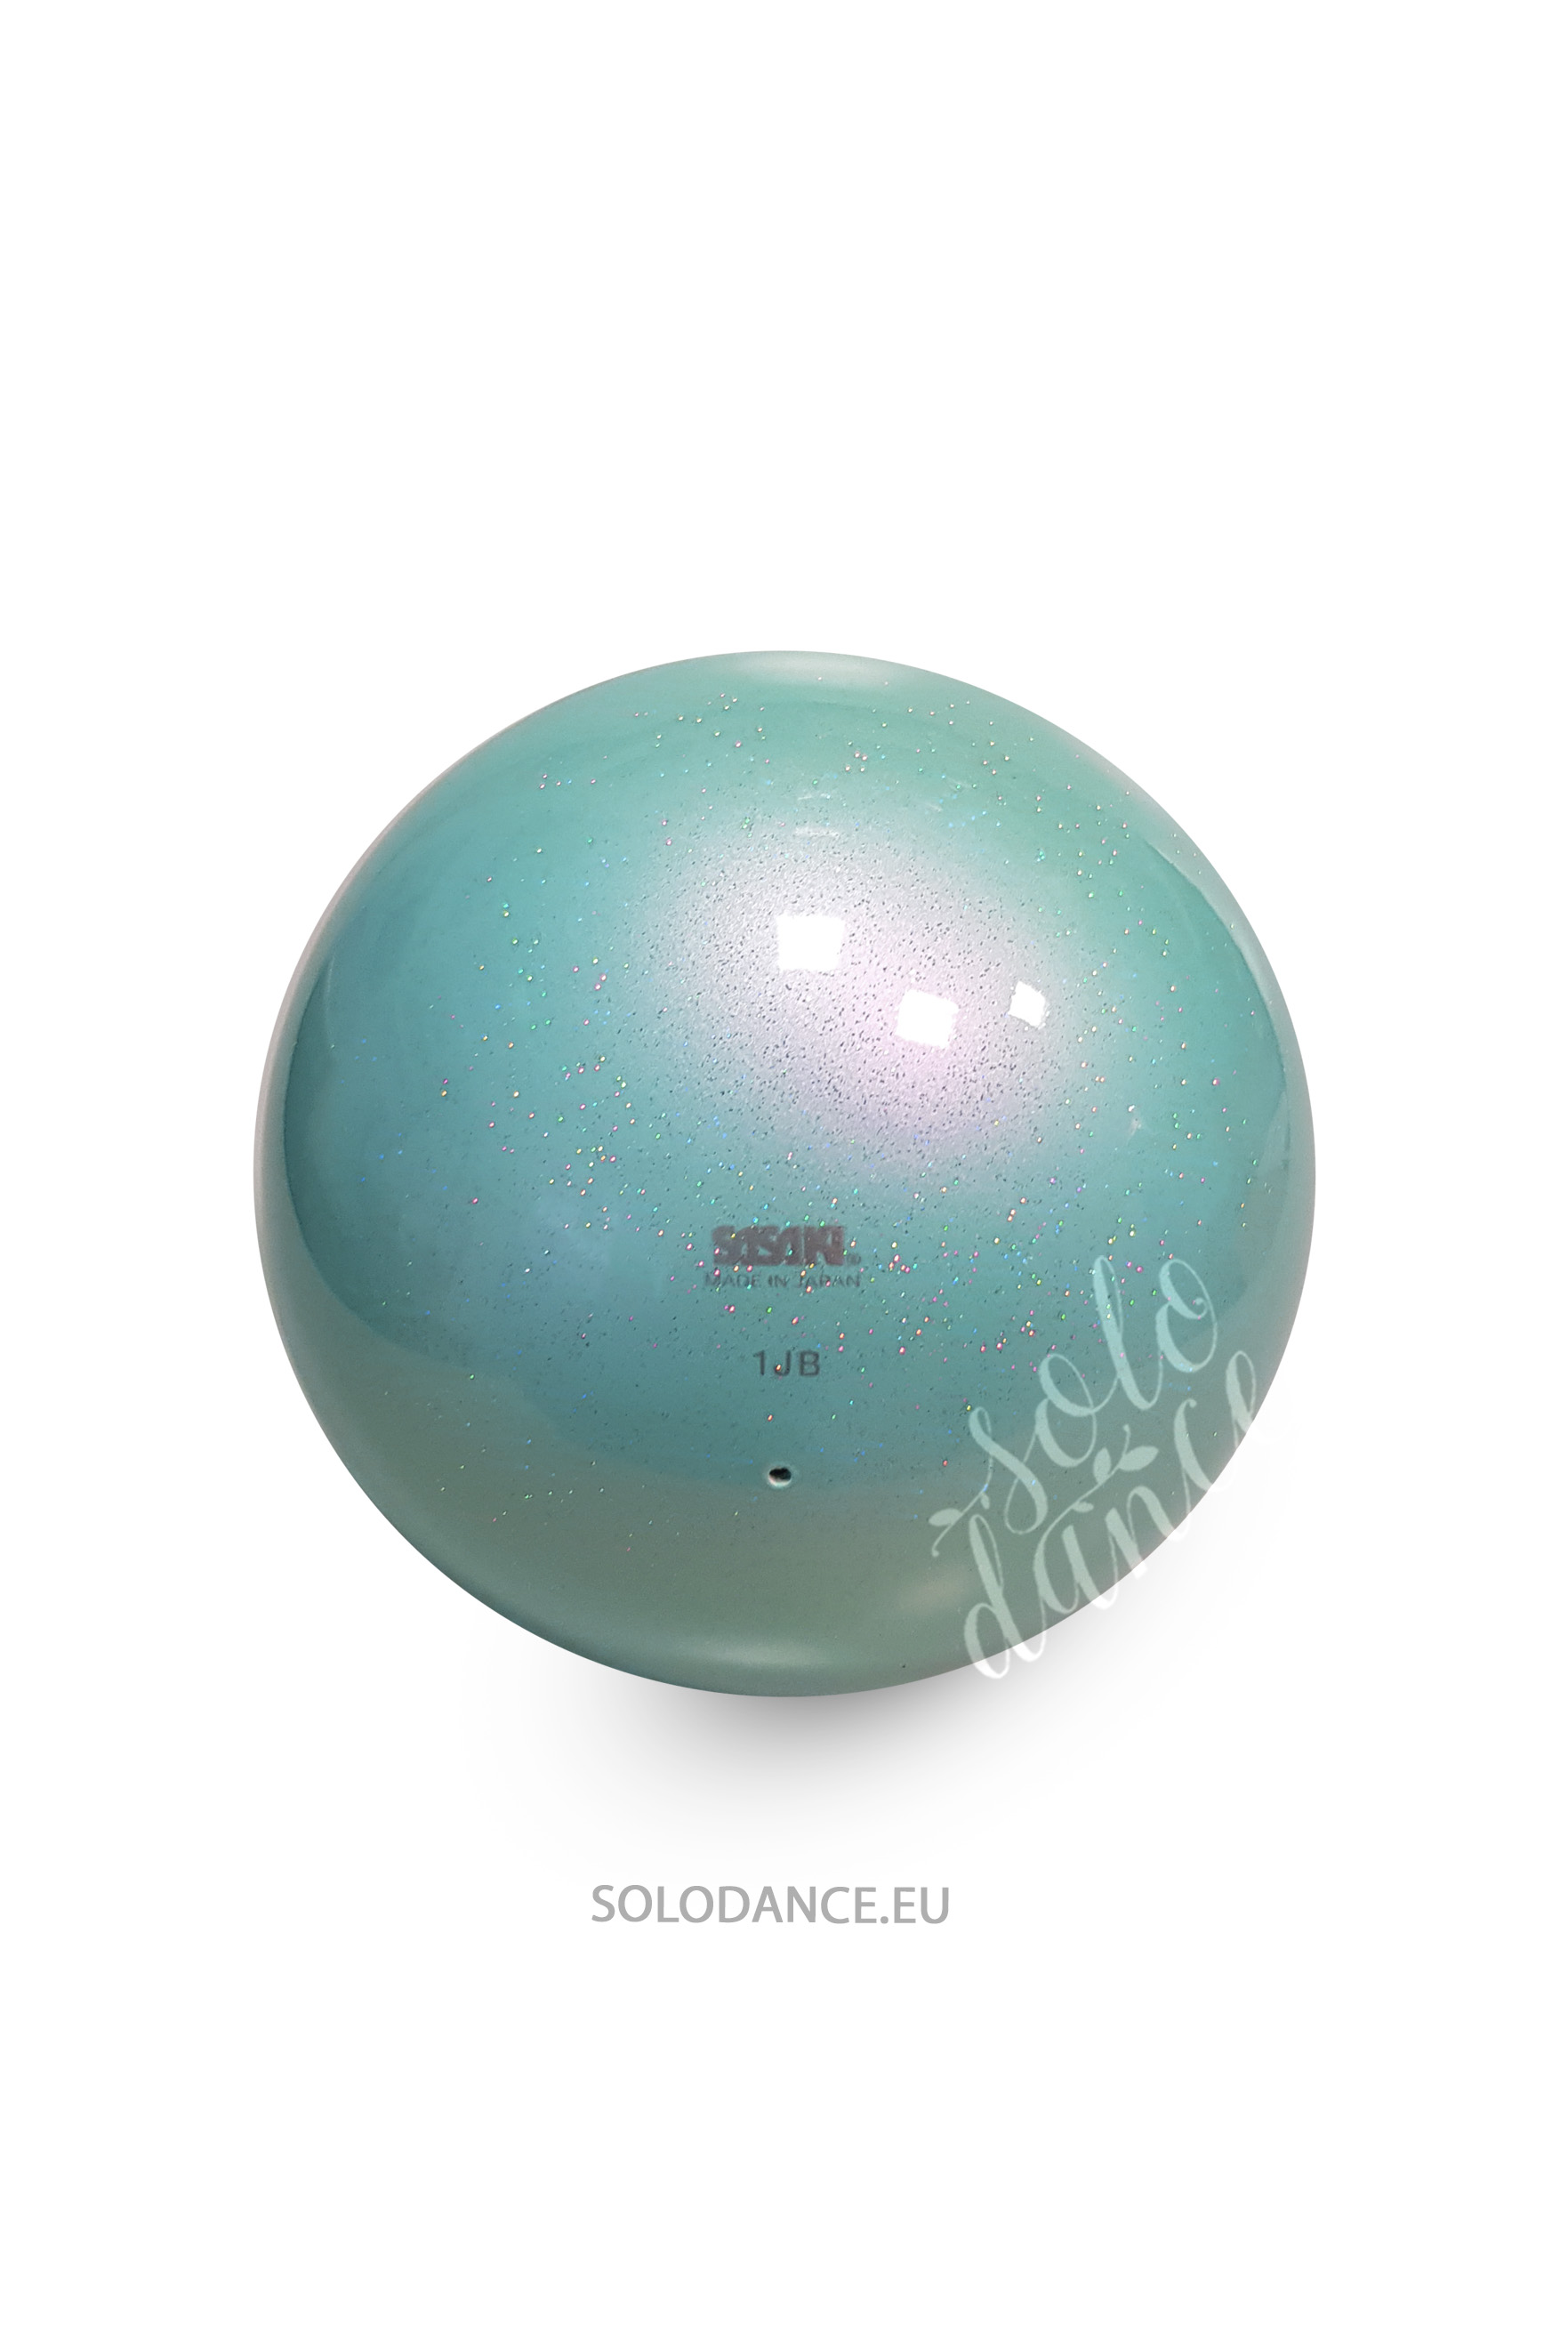 Rhythmic gymnastics ball Sasaki AURORA M-207MAU 17 cm LD (LAVENDER) 